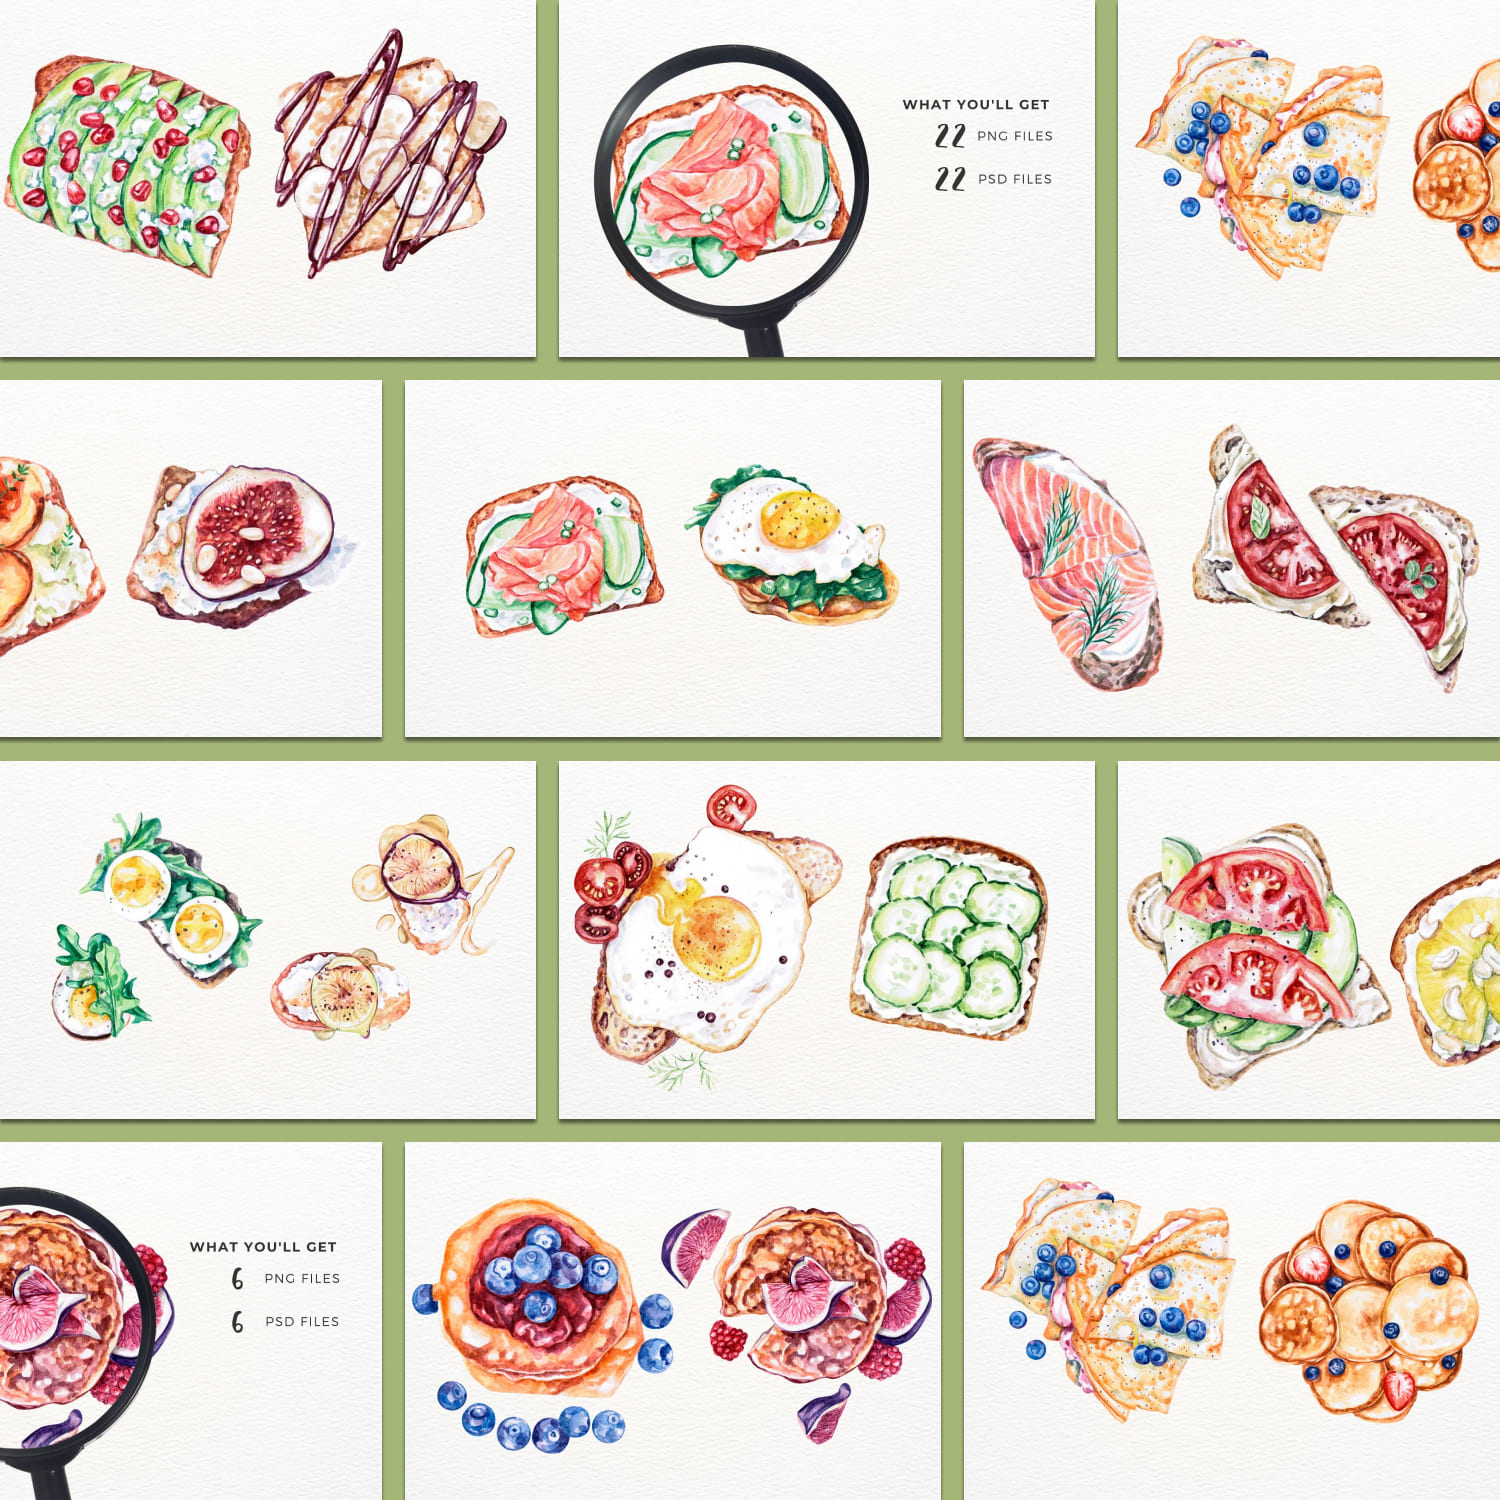 Watercolor Sandwiches Breakfast created by ArtbyHien.